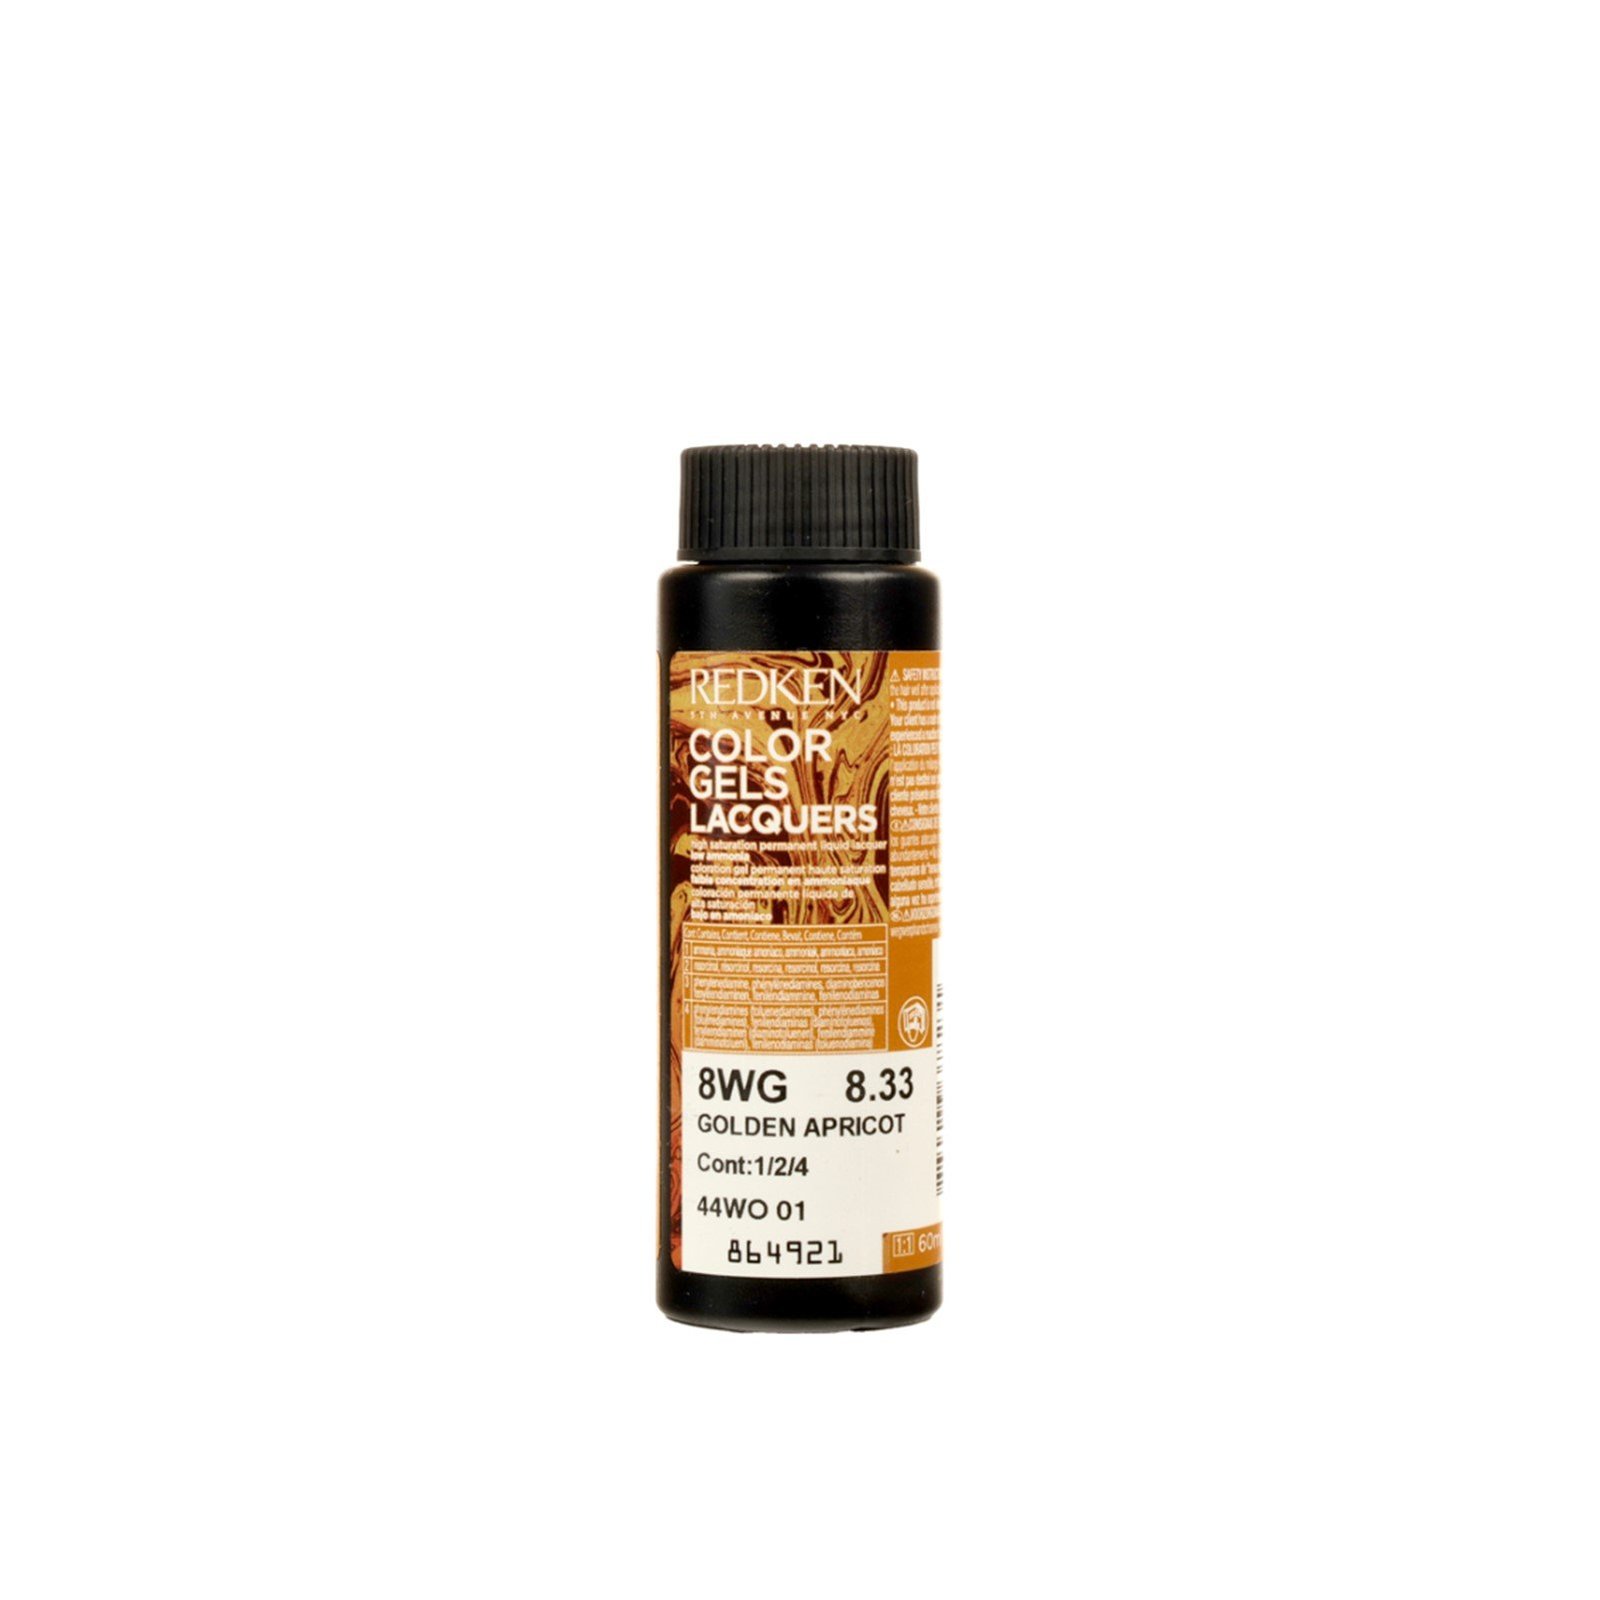 Redken Color Gels Lacquers Permanent Hair Dye 8WG Golden Apricot 60ml (2.03 fl oz)